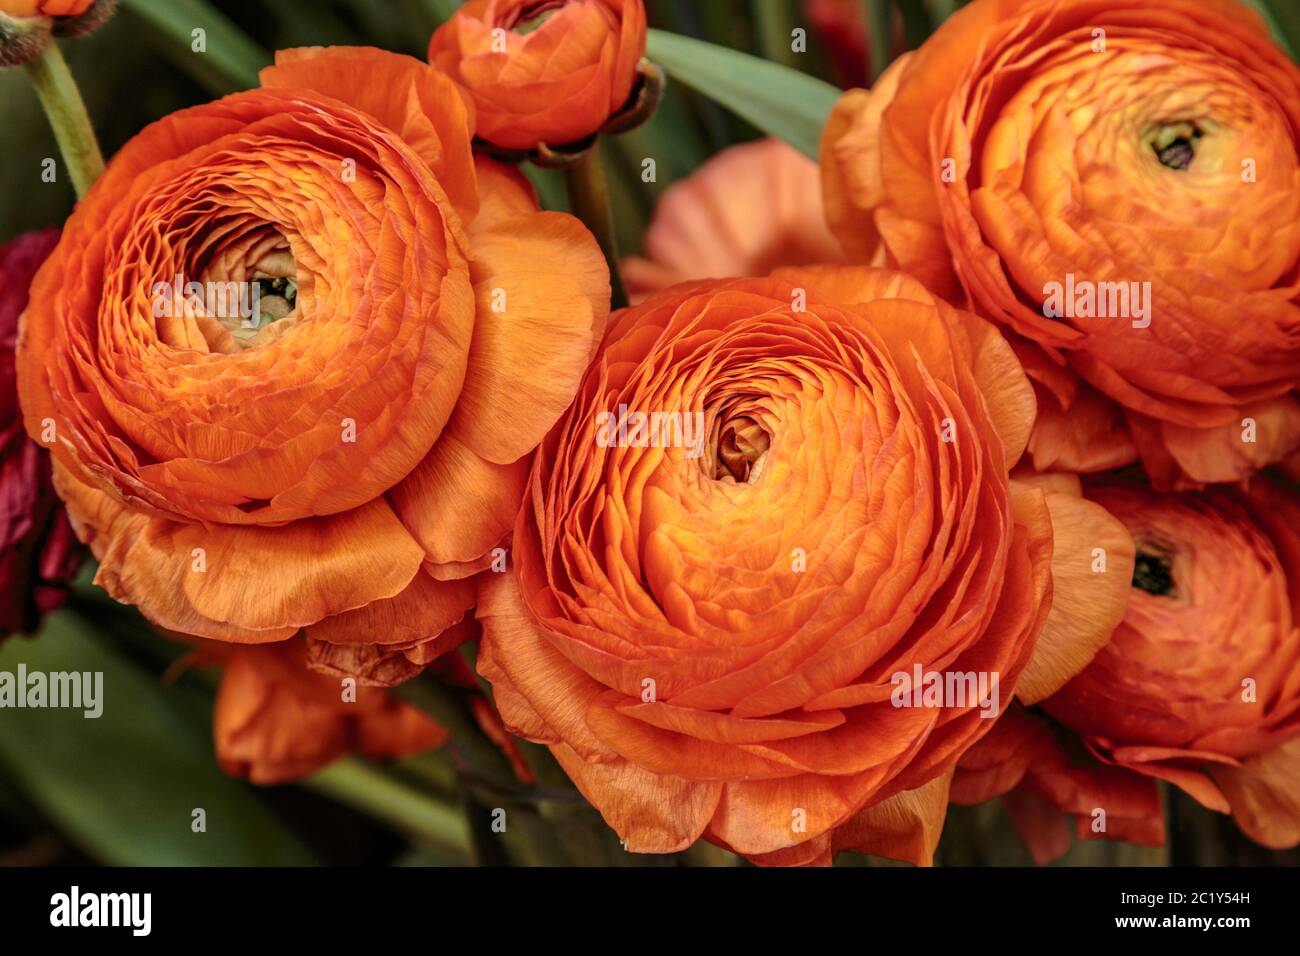 Schöne orange krautige Pfingstrose. Сlose Ansicht von Ranunculus aka Butterblume, exquisit, mit einer Rose-ähnlichen Blüten. Pers Stockfoto